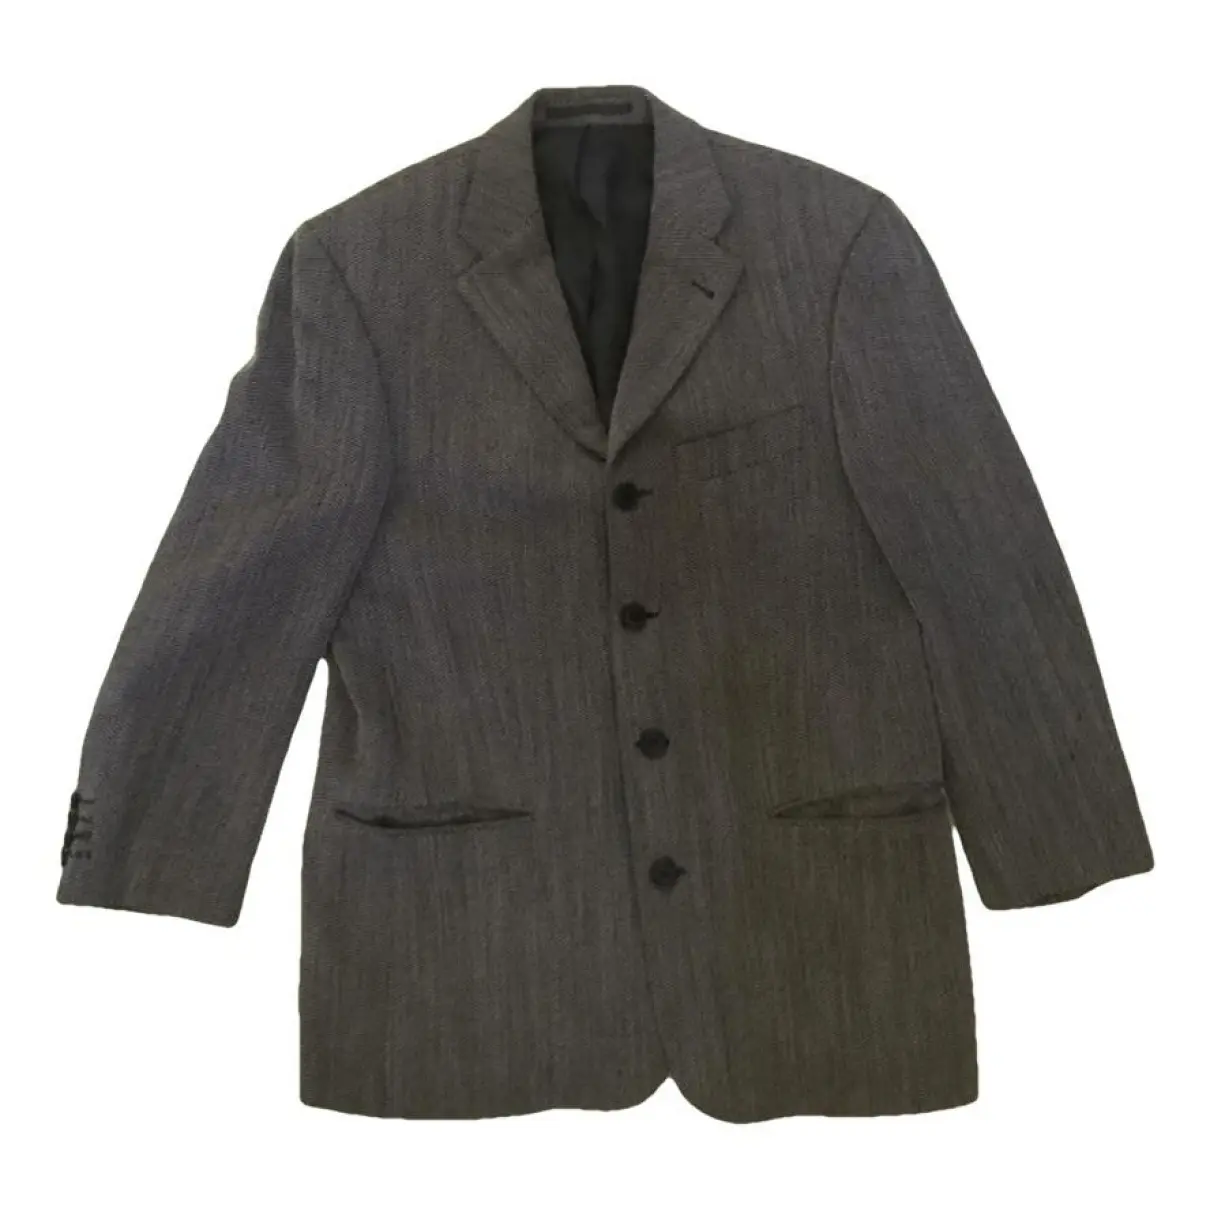 Wool suit Pierre Balmain - Vintage